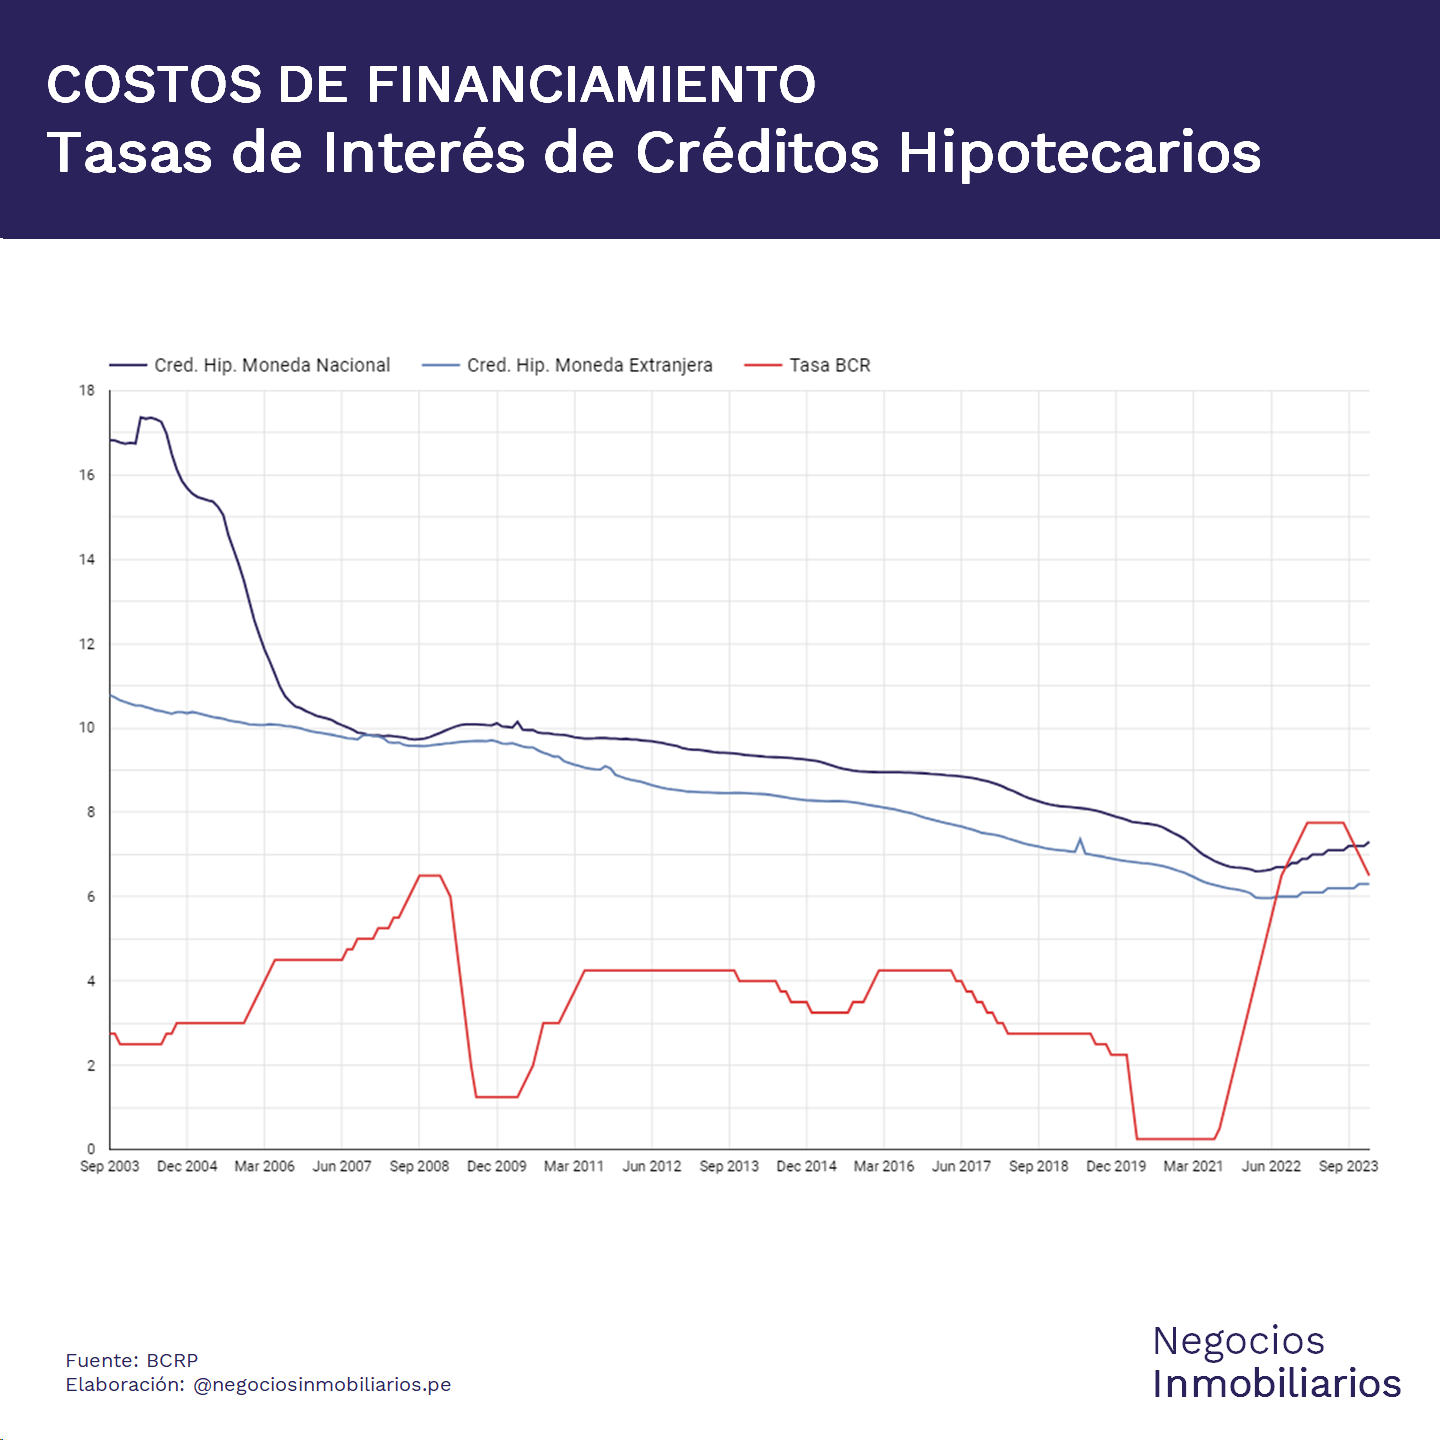 Histórico de Costos de Financiamiento de Hipotecas en Moneda Nacional y Moneda Extranjera vs Tasa de Referencia del BCRP